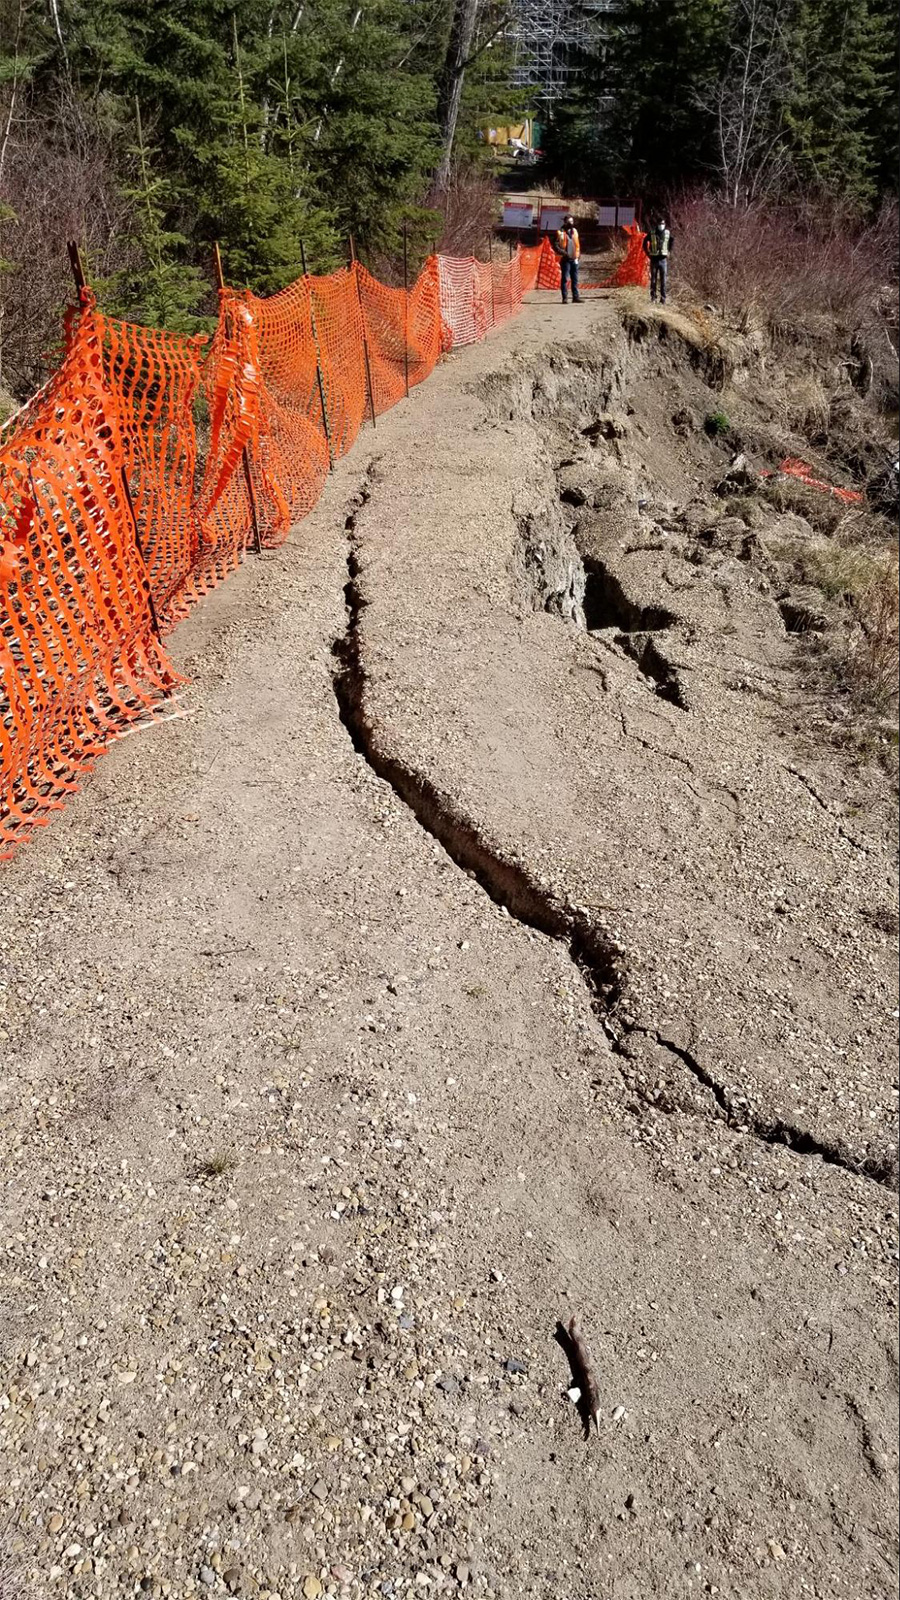 Whitemud Creek Erosion and Landslide Repair at 54 Ave (April 2021, looking north)